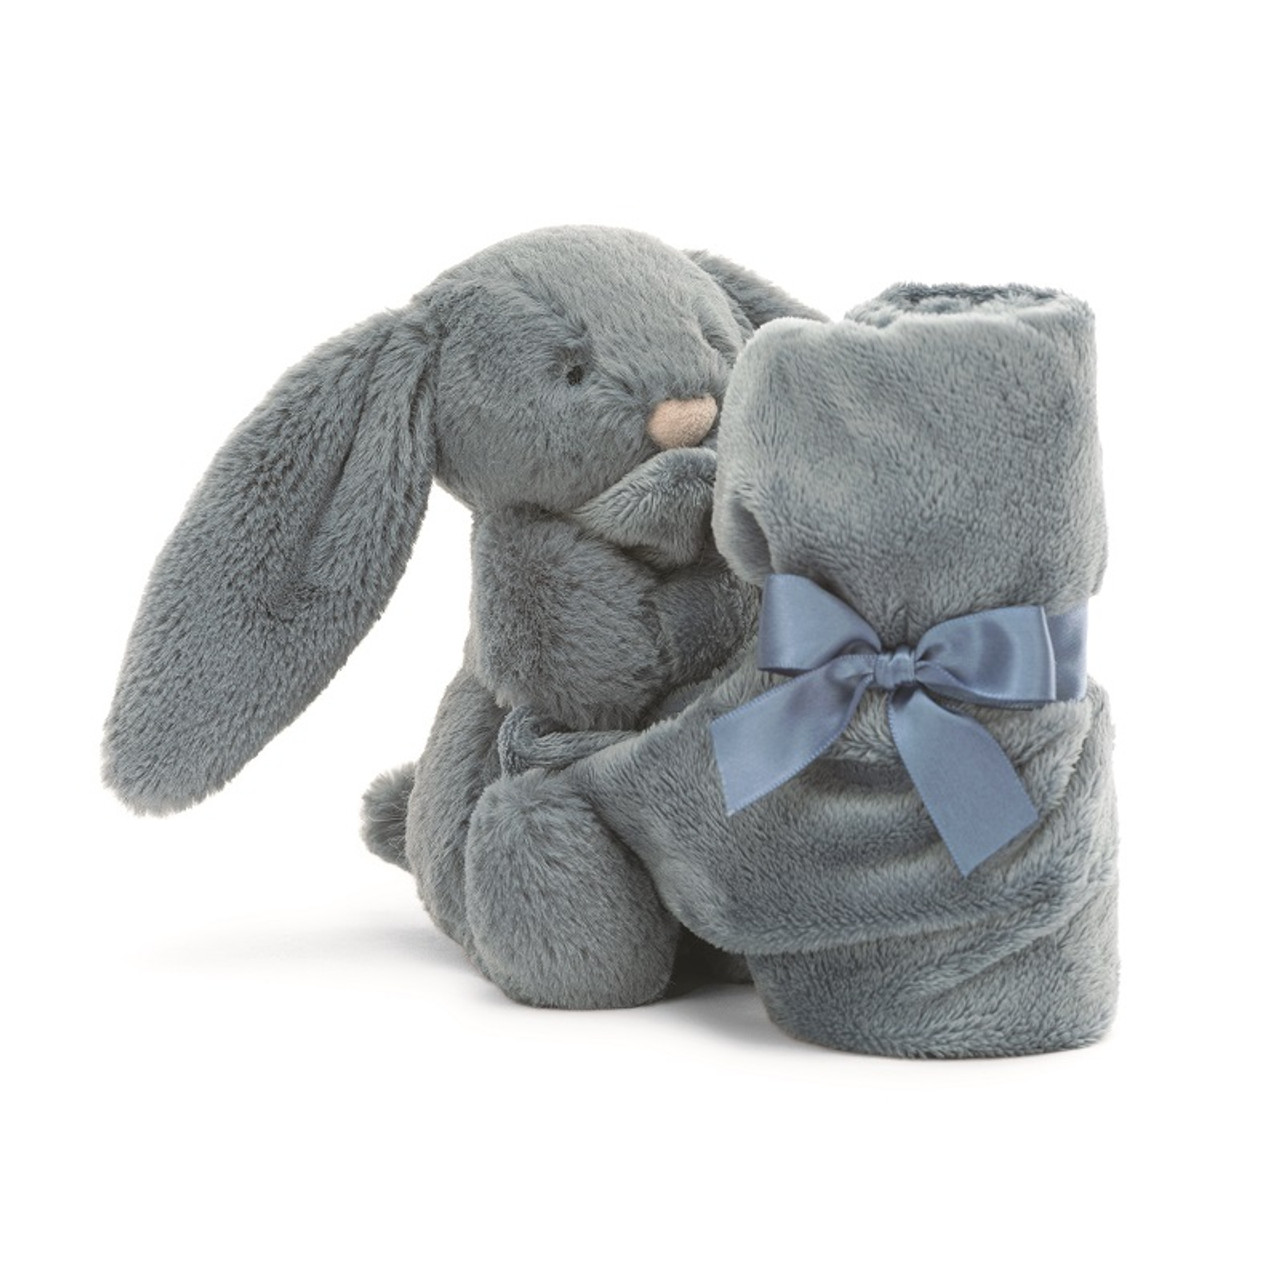 Bashful Bunny Cream Bag Charm - The Blue House